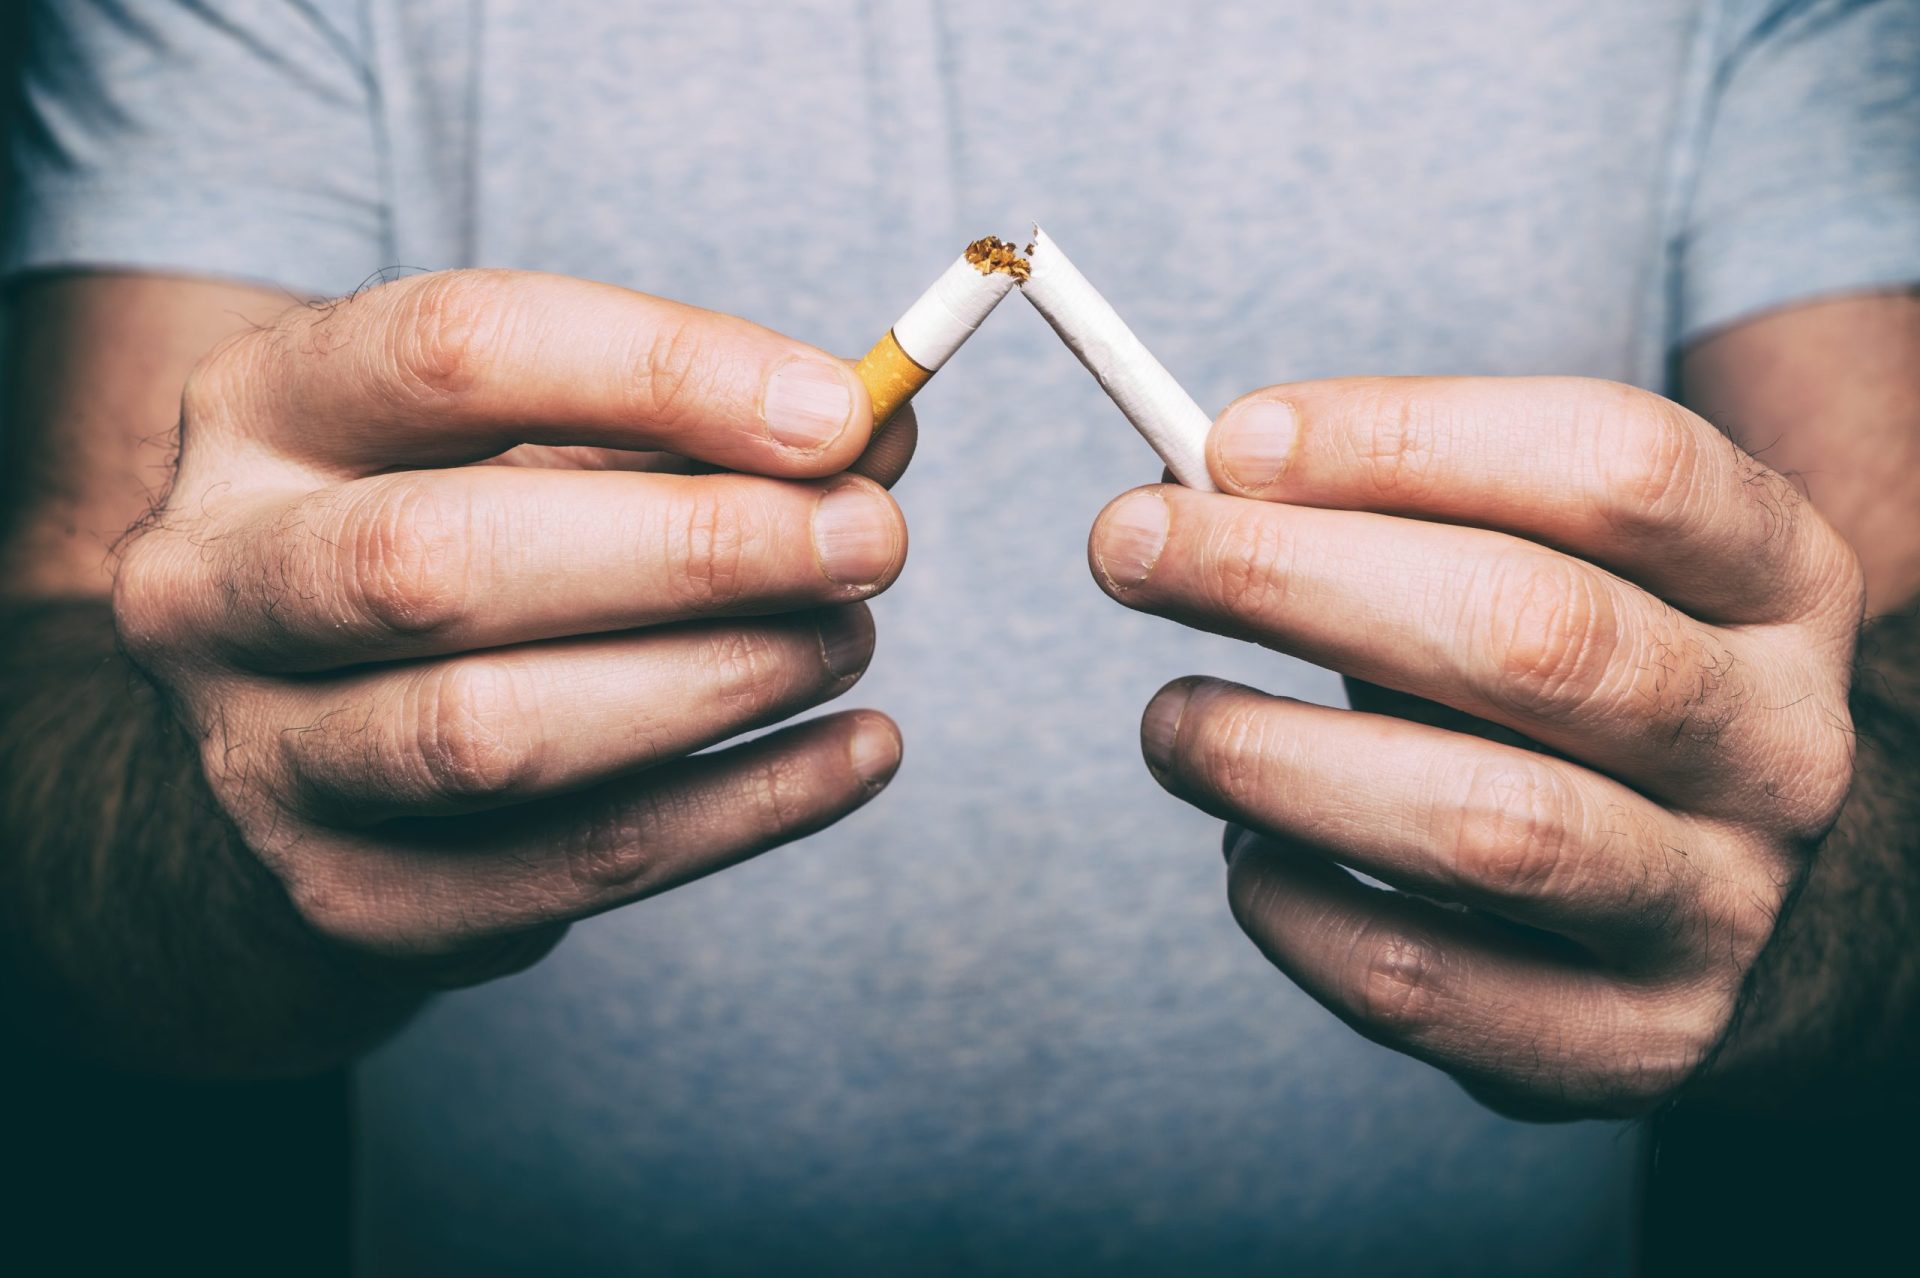 Sete milhões de pessoas morrem por ano devido ao tabaco